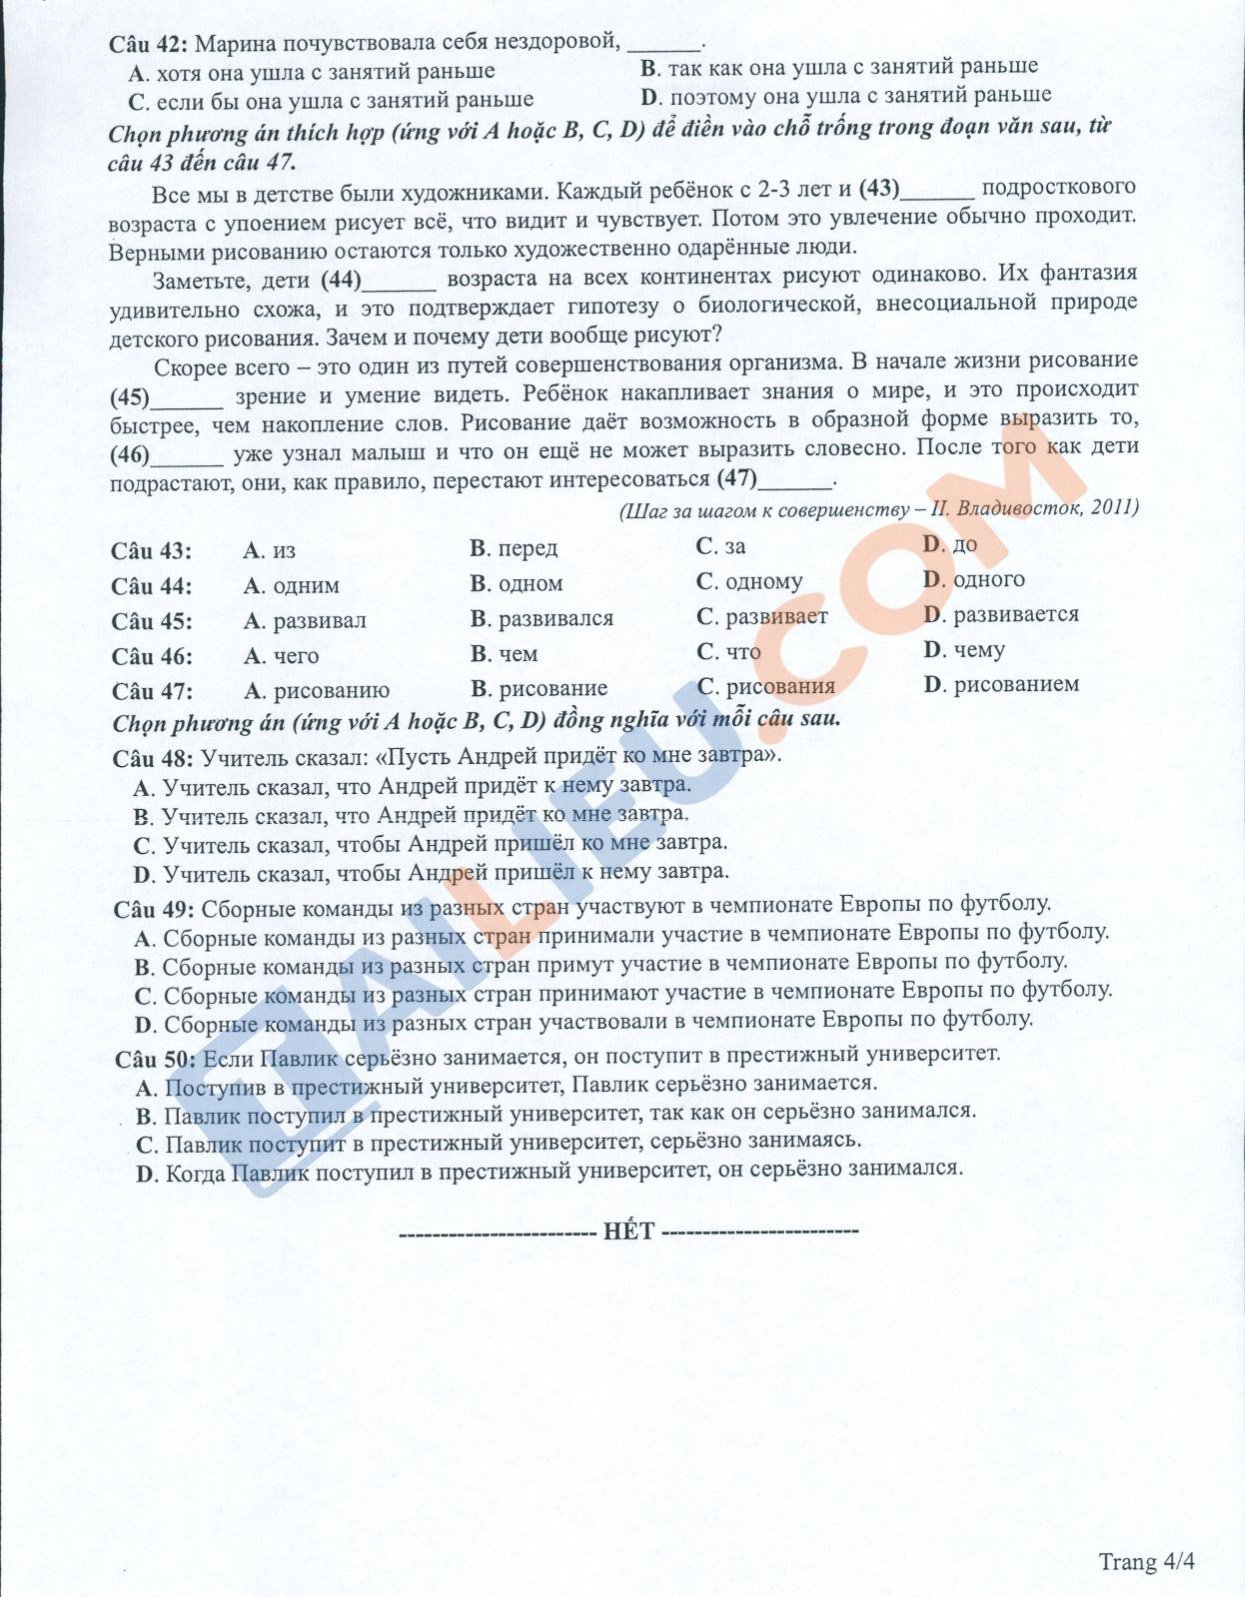 Đề thi tham khảo THPT Quốc Gia 2022 môn Tiếng Nga chính thức của Bộ